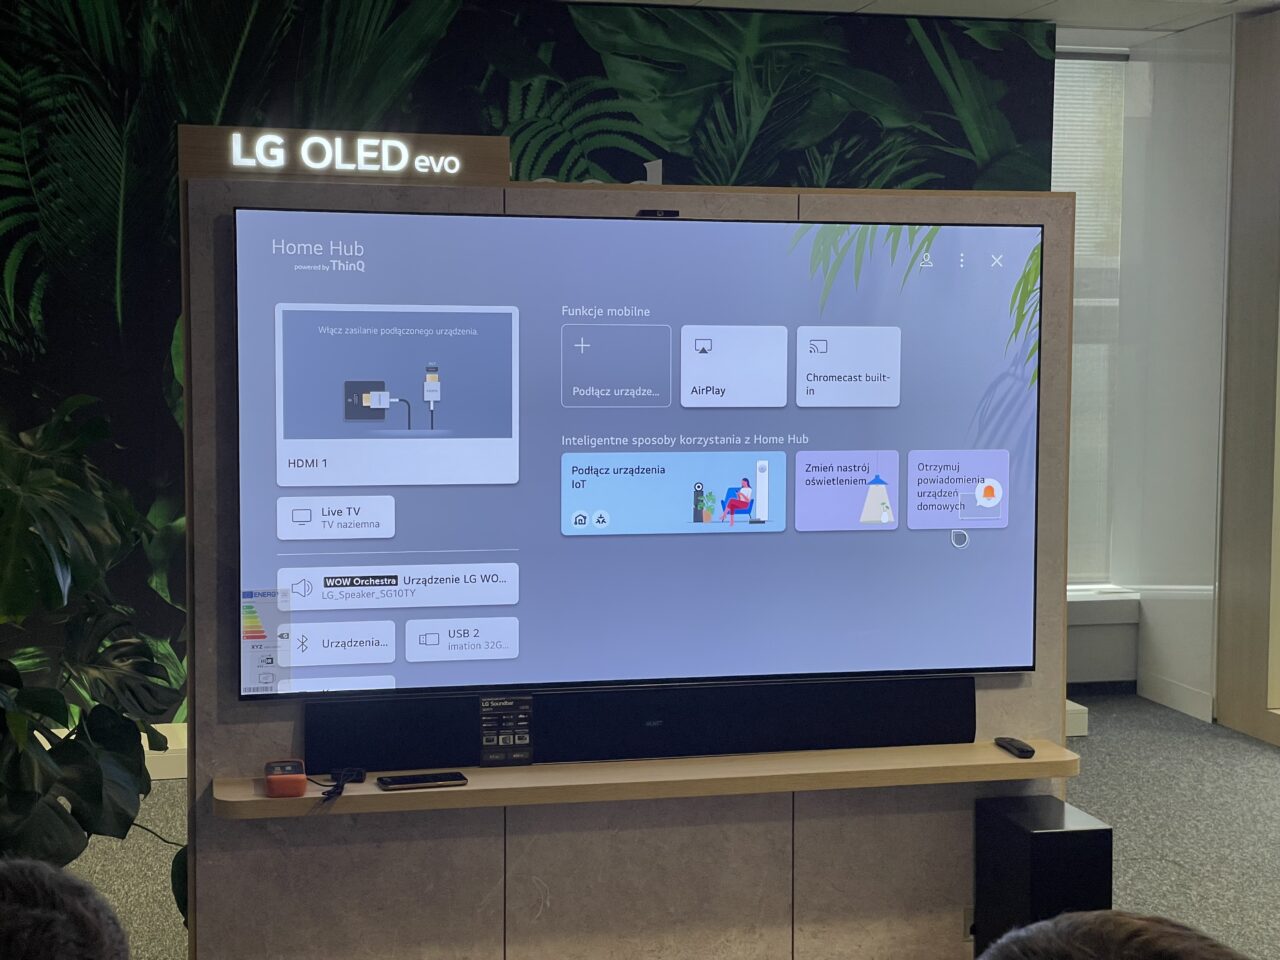 Telewizor LG OLED evo wyświetlający ekran główny Home Hub z opcjami podłączenia i sterowania urządzeń, umieszczony w nowoczesnym biurowym środowisku z roślinami w tle.